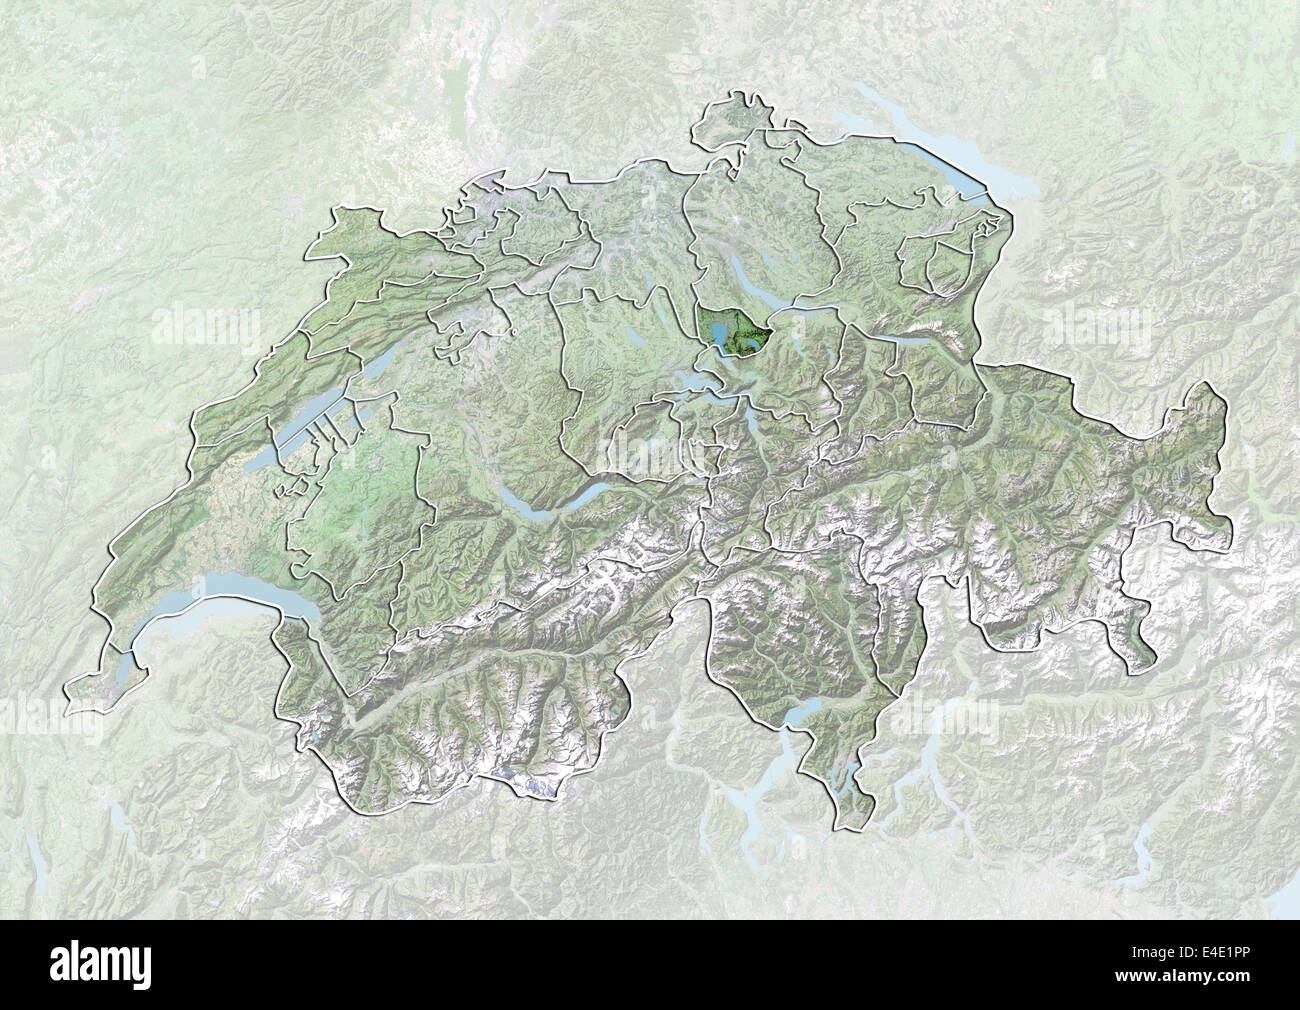 La Suisse et le canton de Zoug, image satellite avec effet de choc Banque D'Images